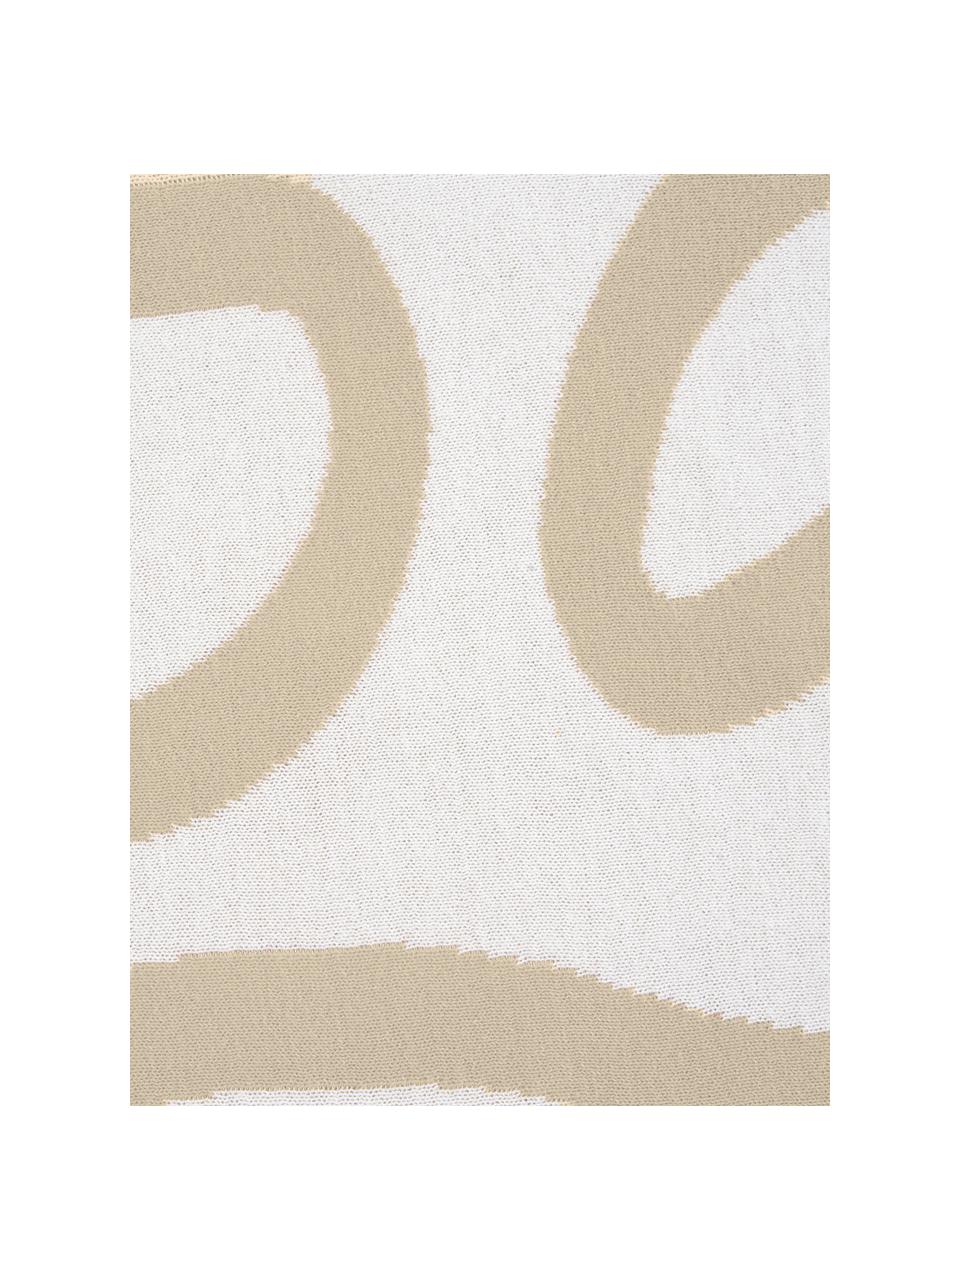 Feinstrick-Wendekissenhülle Amina mit abstraktem Linienmuster, 100% Baumwolle, Beige/ Weiss, 40 x 40 cm